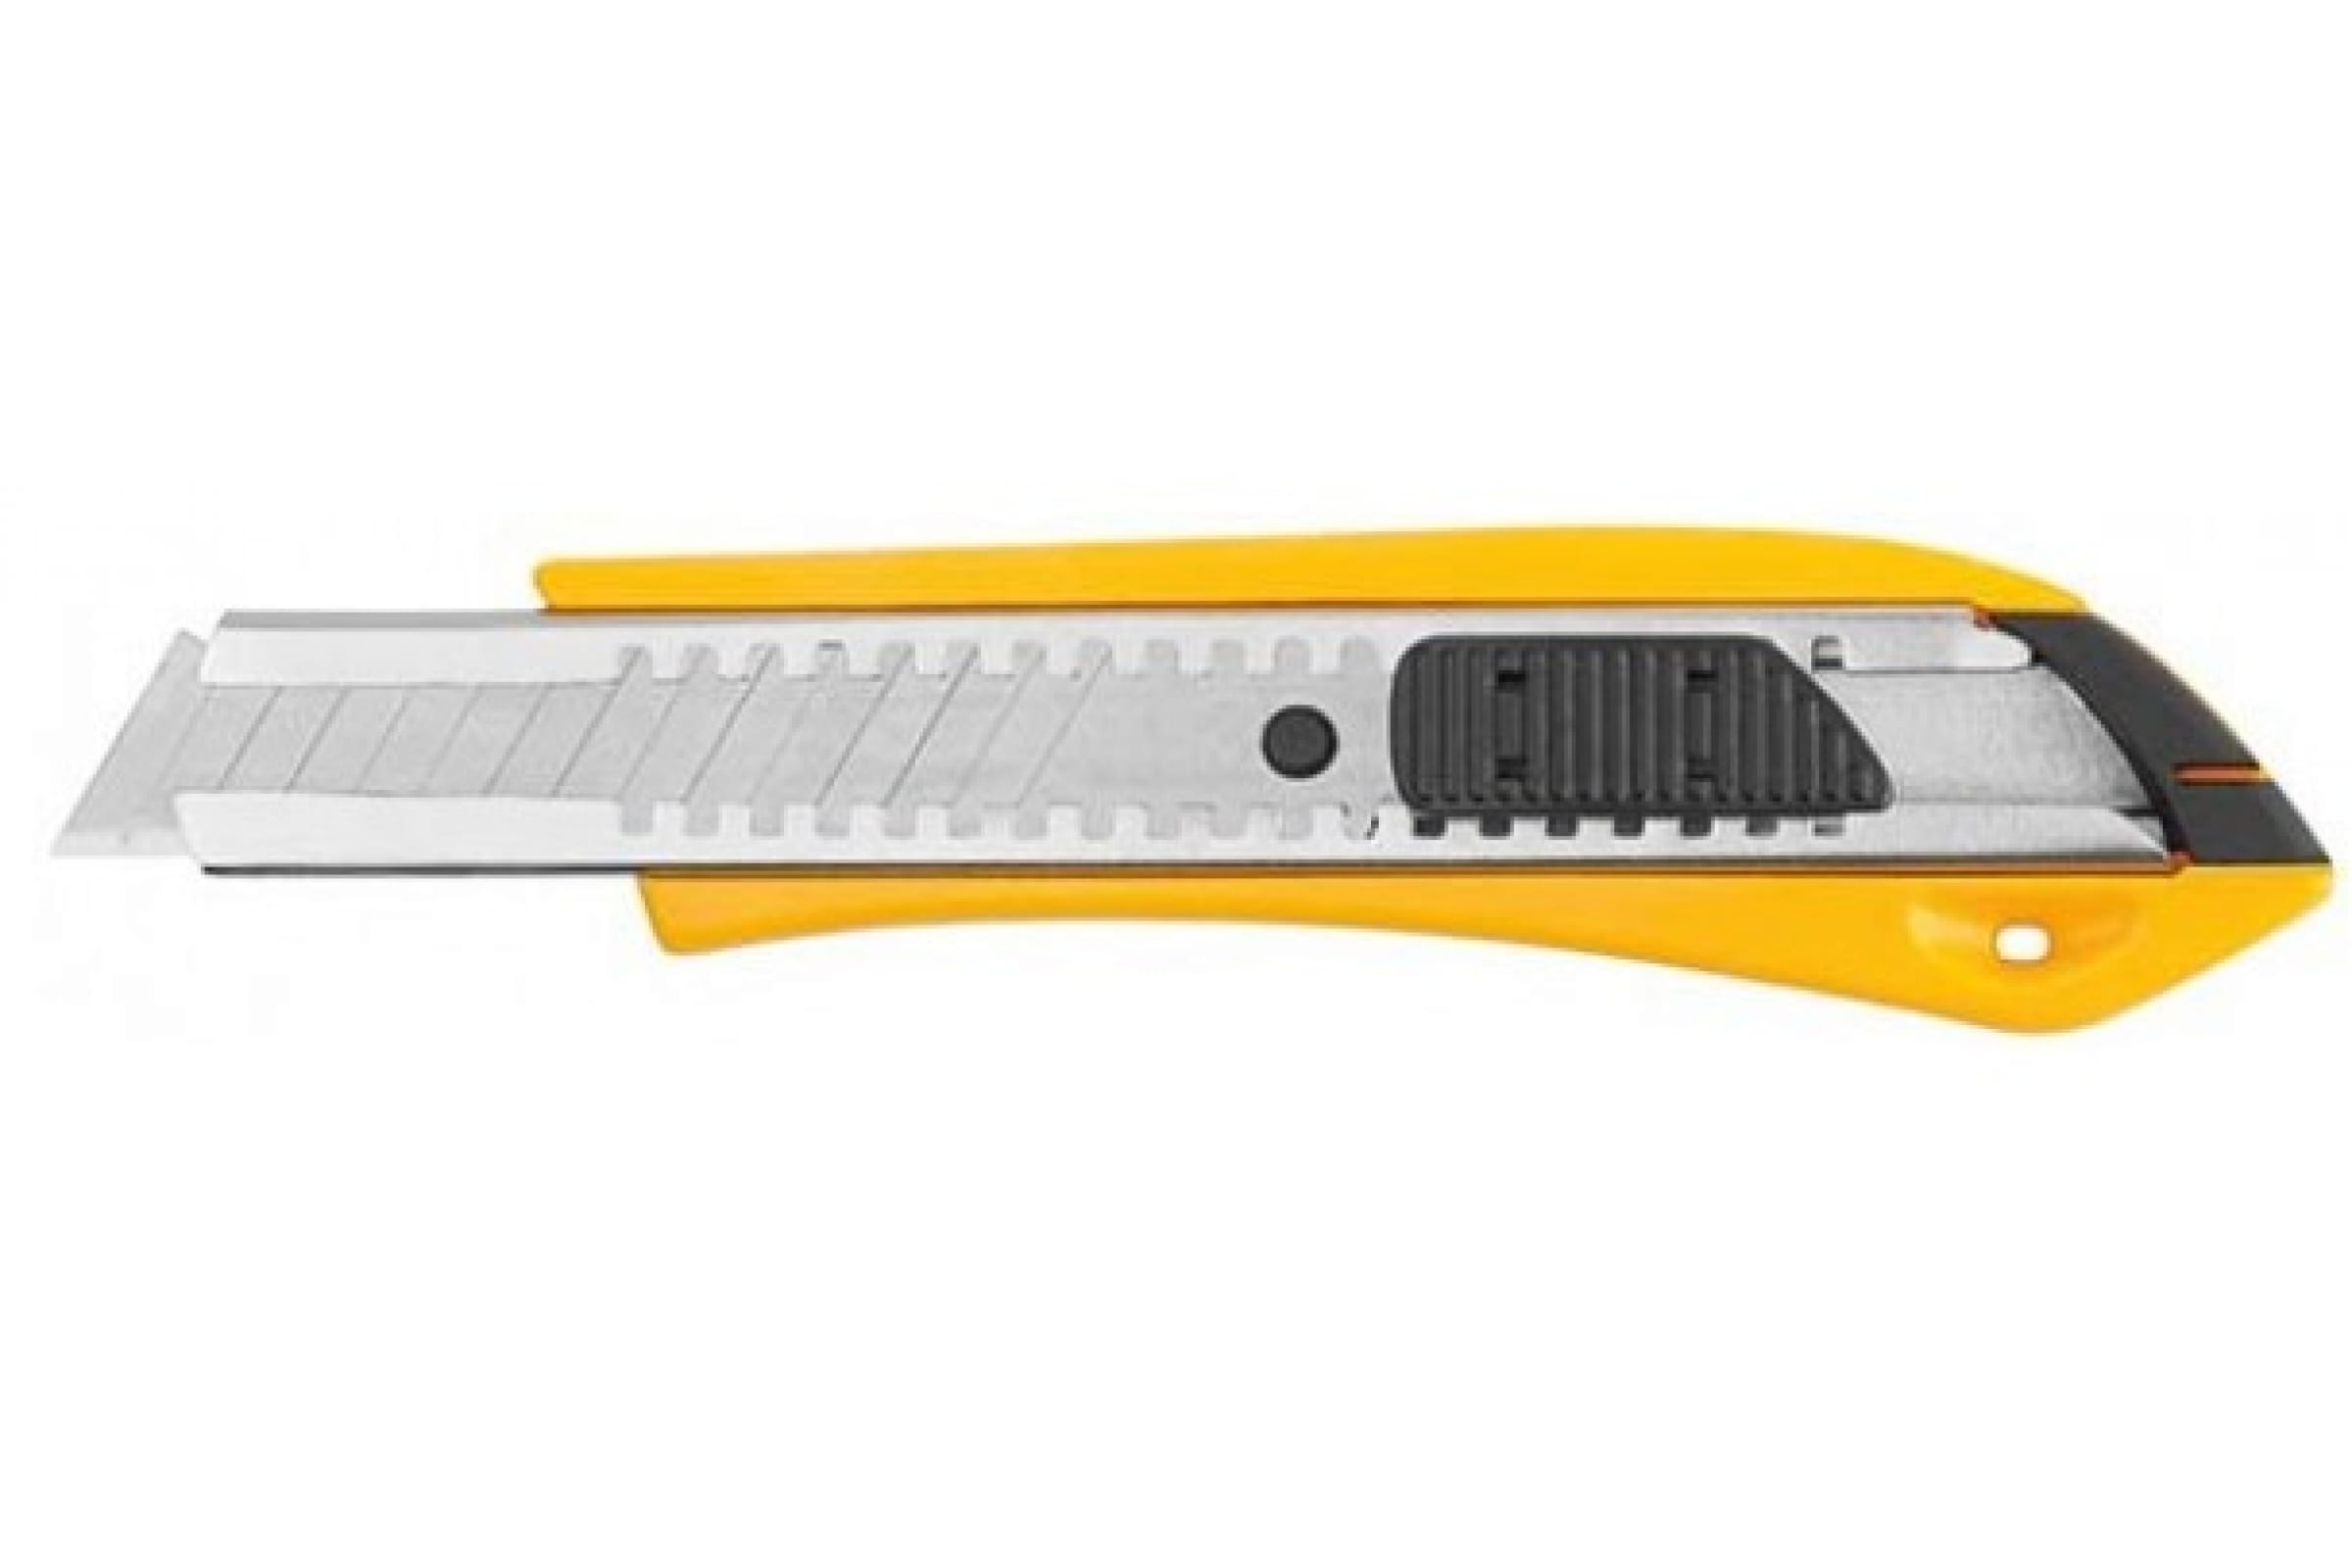 FIT Нож технический 18 мм усиленный пластиковый, лезвие 15 сегментов 10225 нож технический курс контур 10173 18 мм усиленный прорезиненный лезвие 15 сегментов